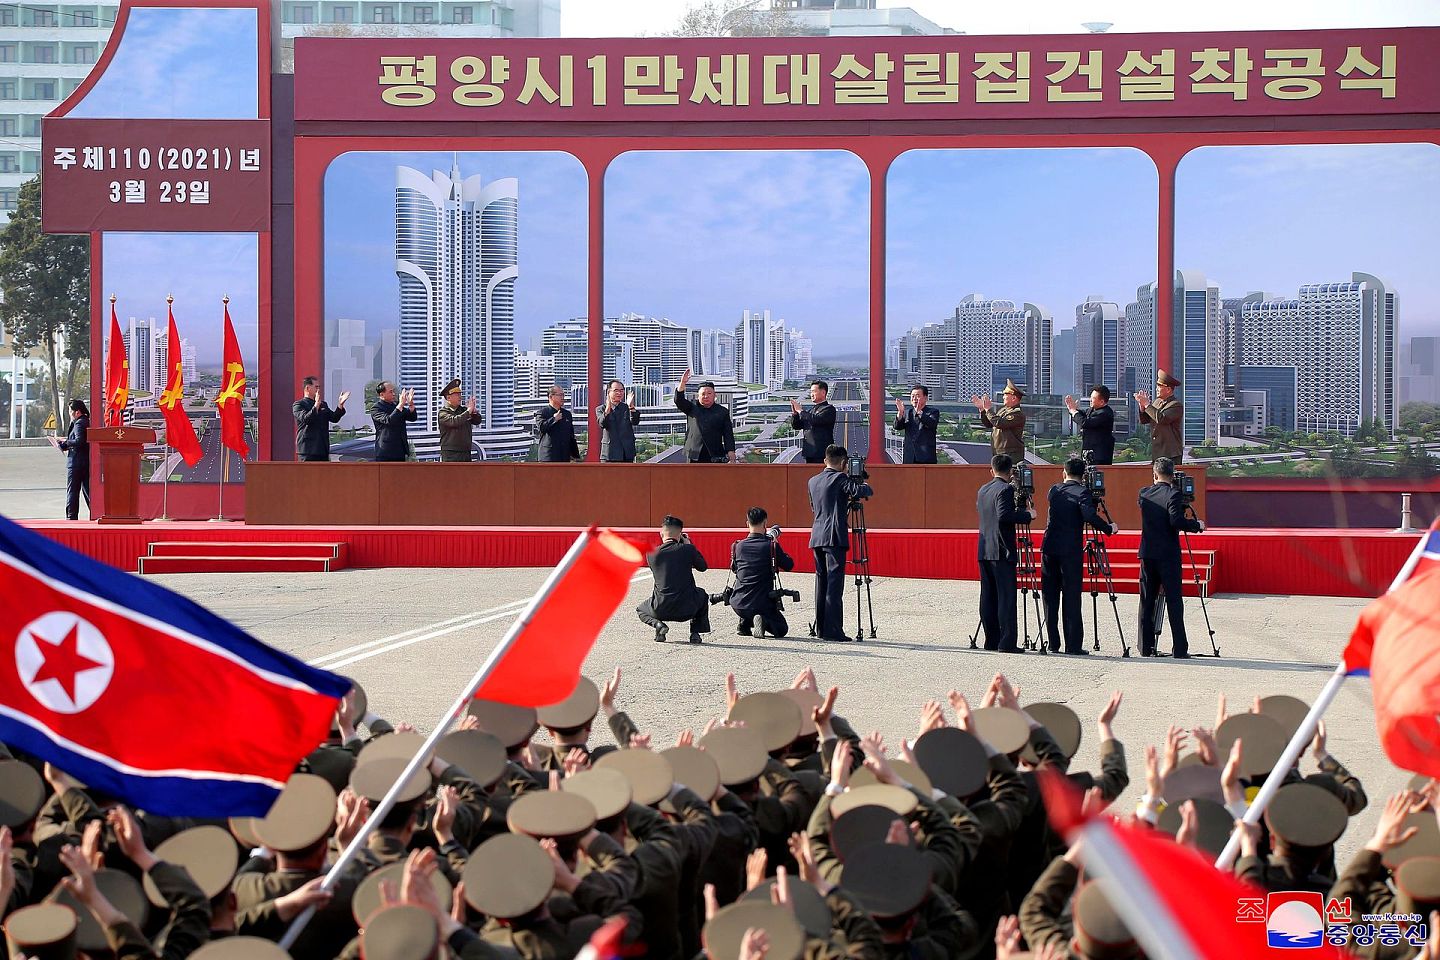 朝鲜媒体并未公布3月21日试射巡航导弹的消息，仅公布朝鲜最高领导人2021年3月23日出席平壤公寓建设项目一期工程仪式的现场照片。（朝中社）